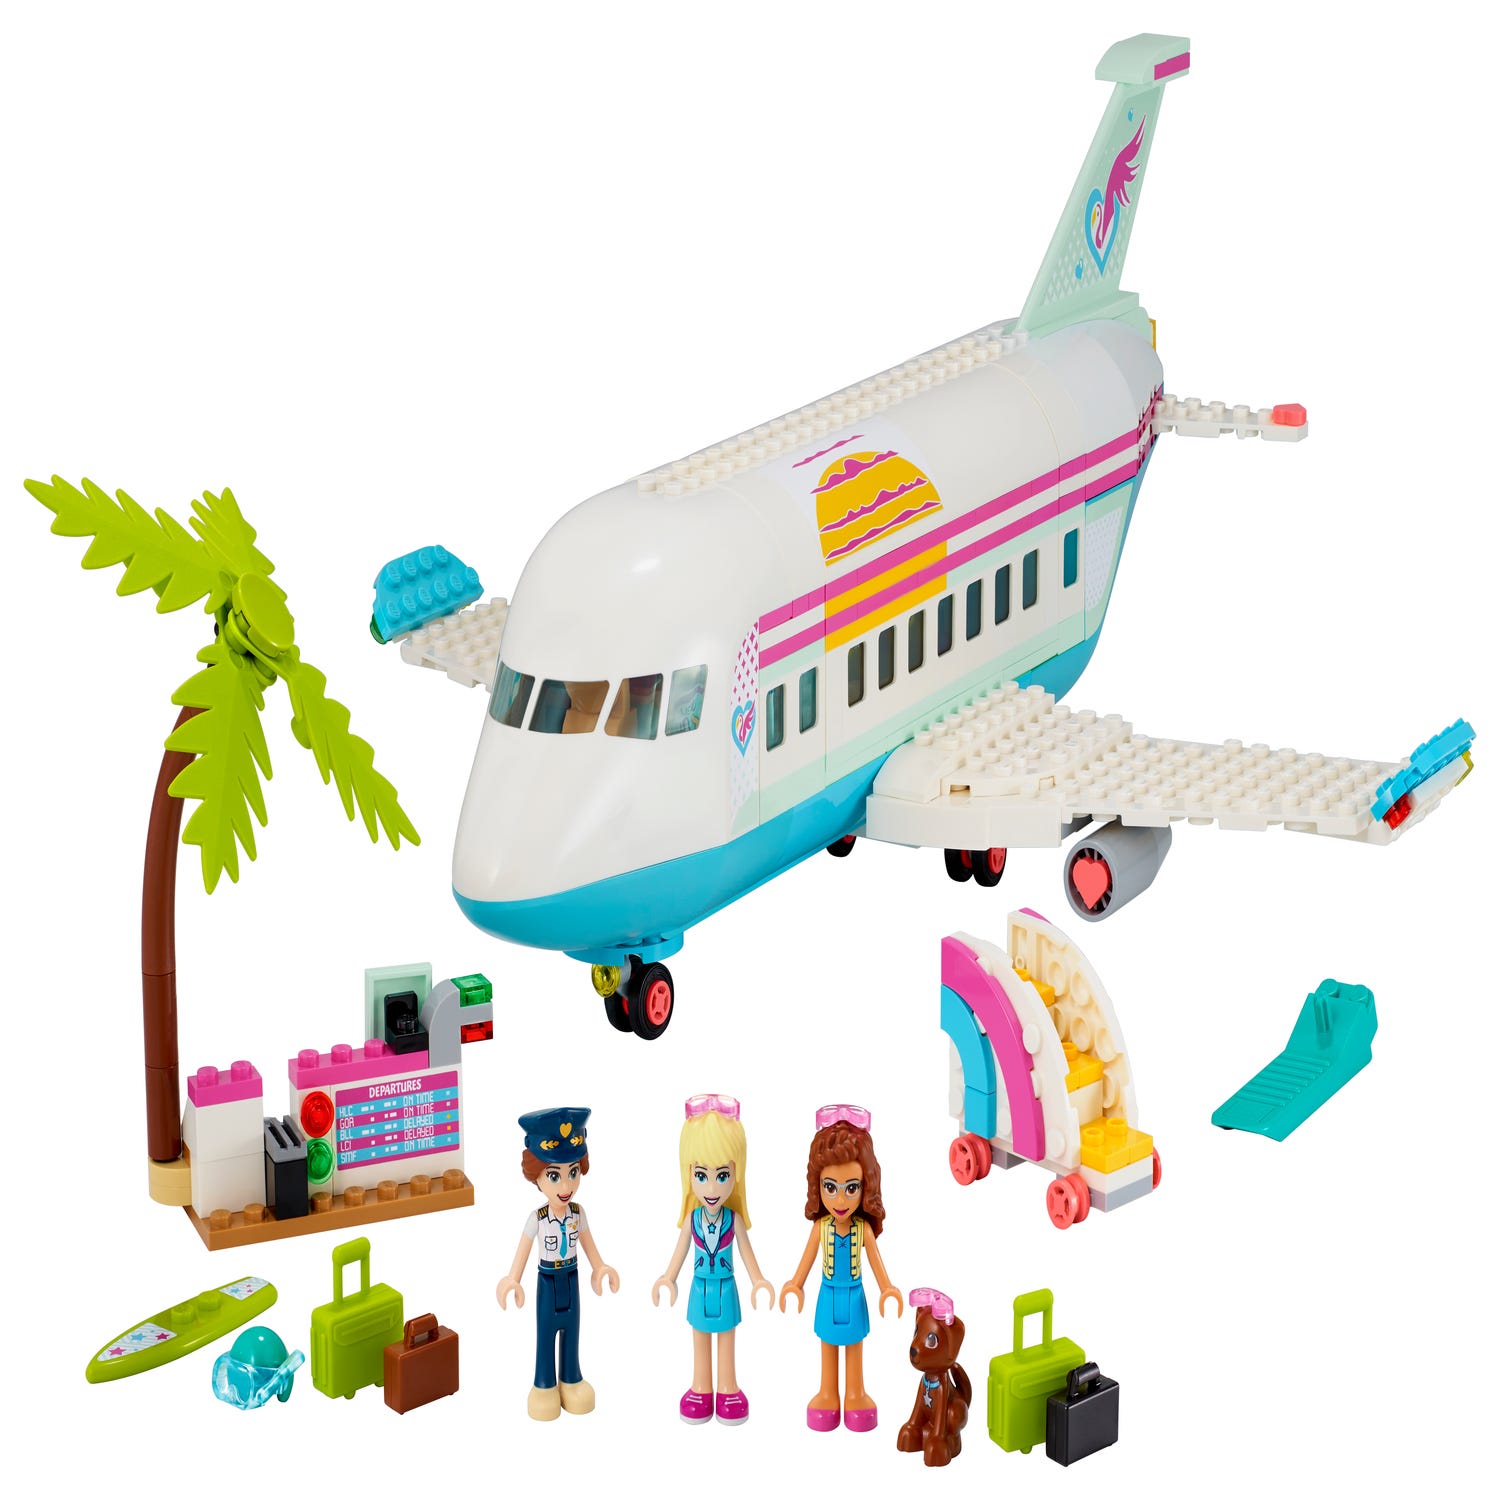 Efterforskning Awaken til bundet Heartlake City Airplane 41429 | Friends | Buy online at the Official LEGO®  Shop US